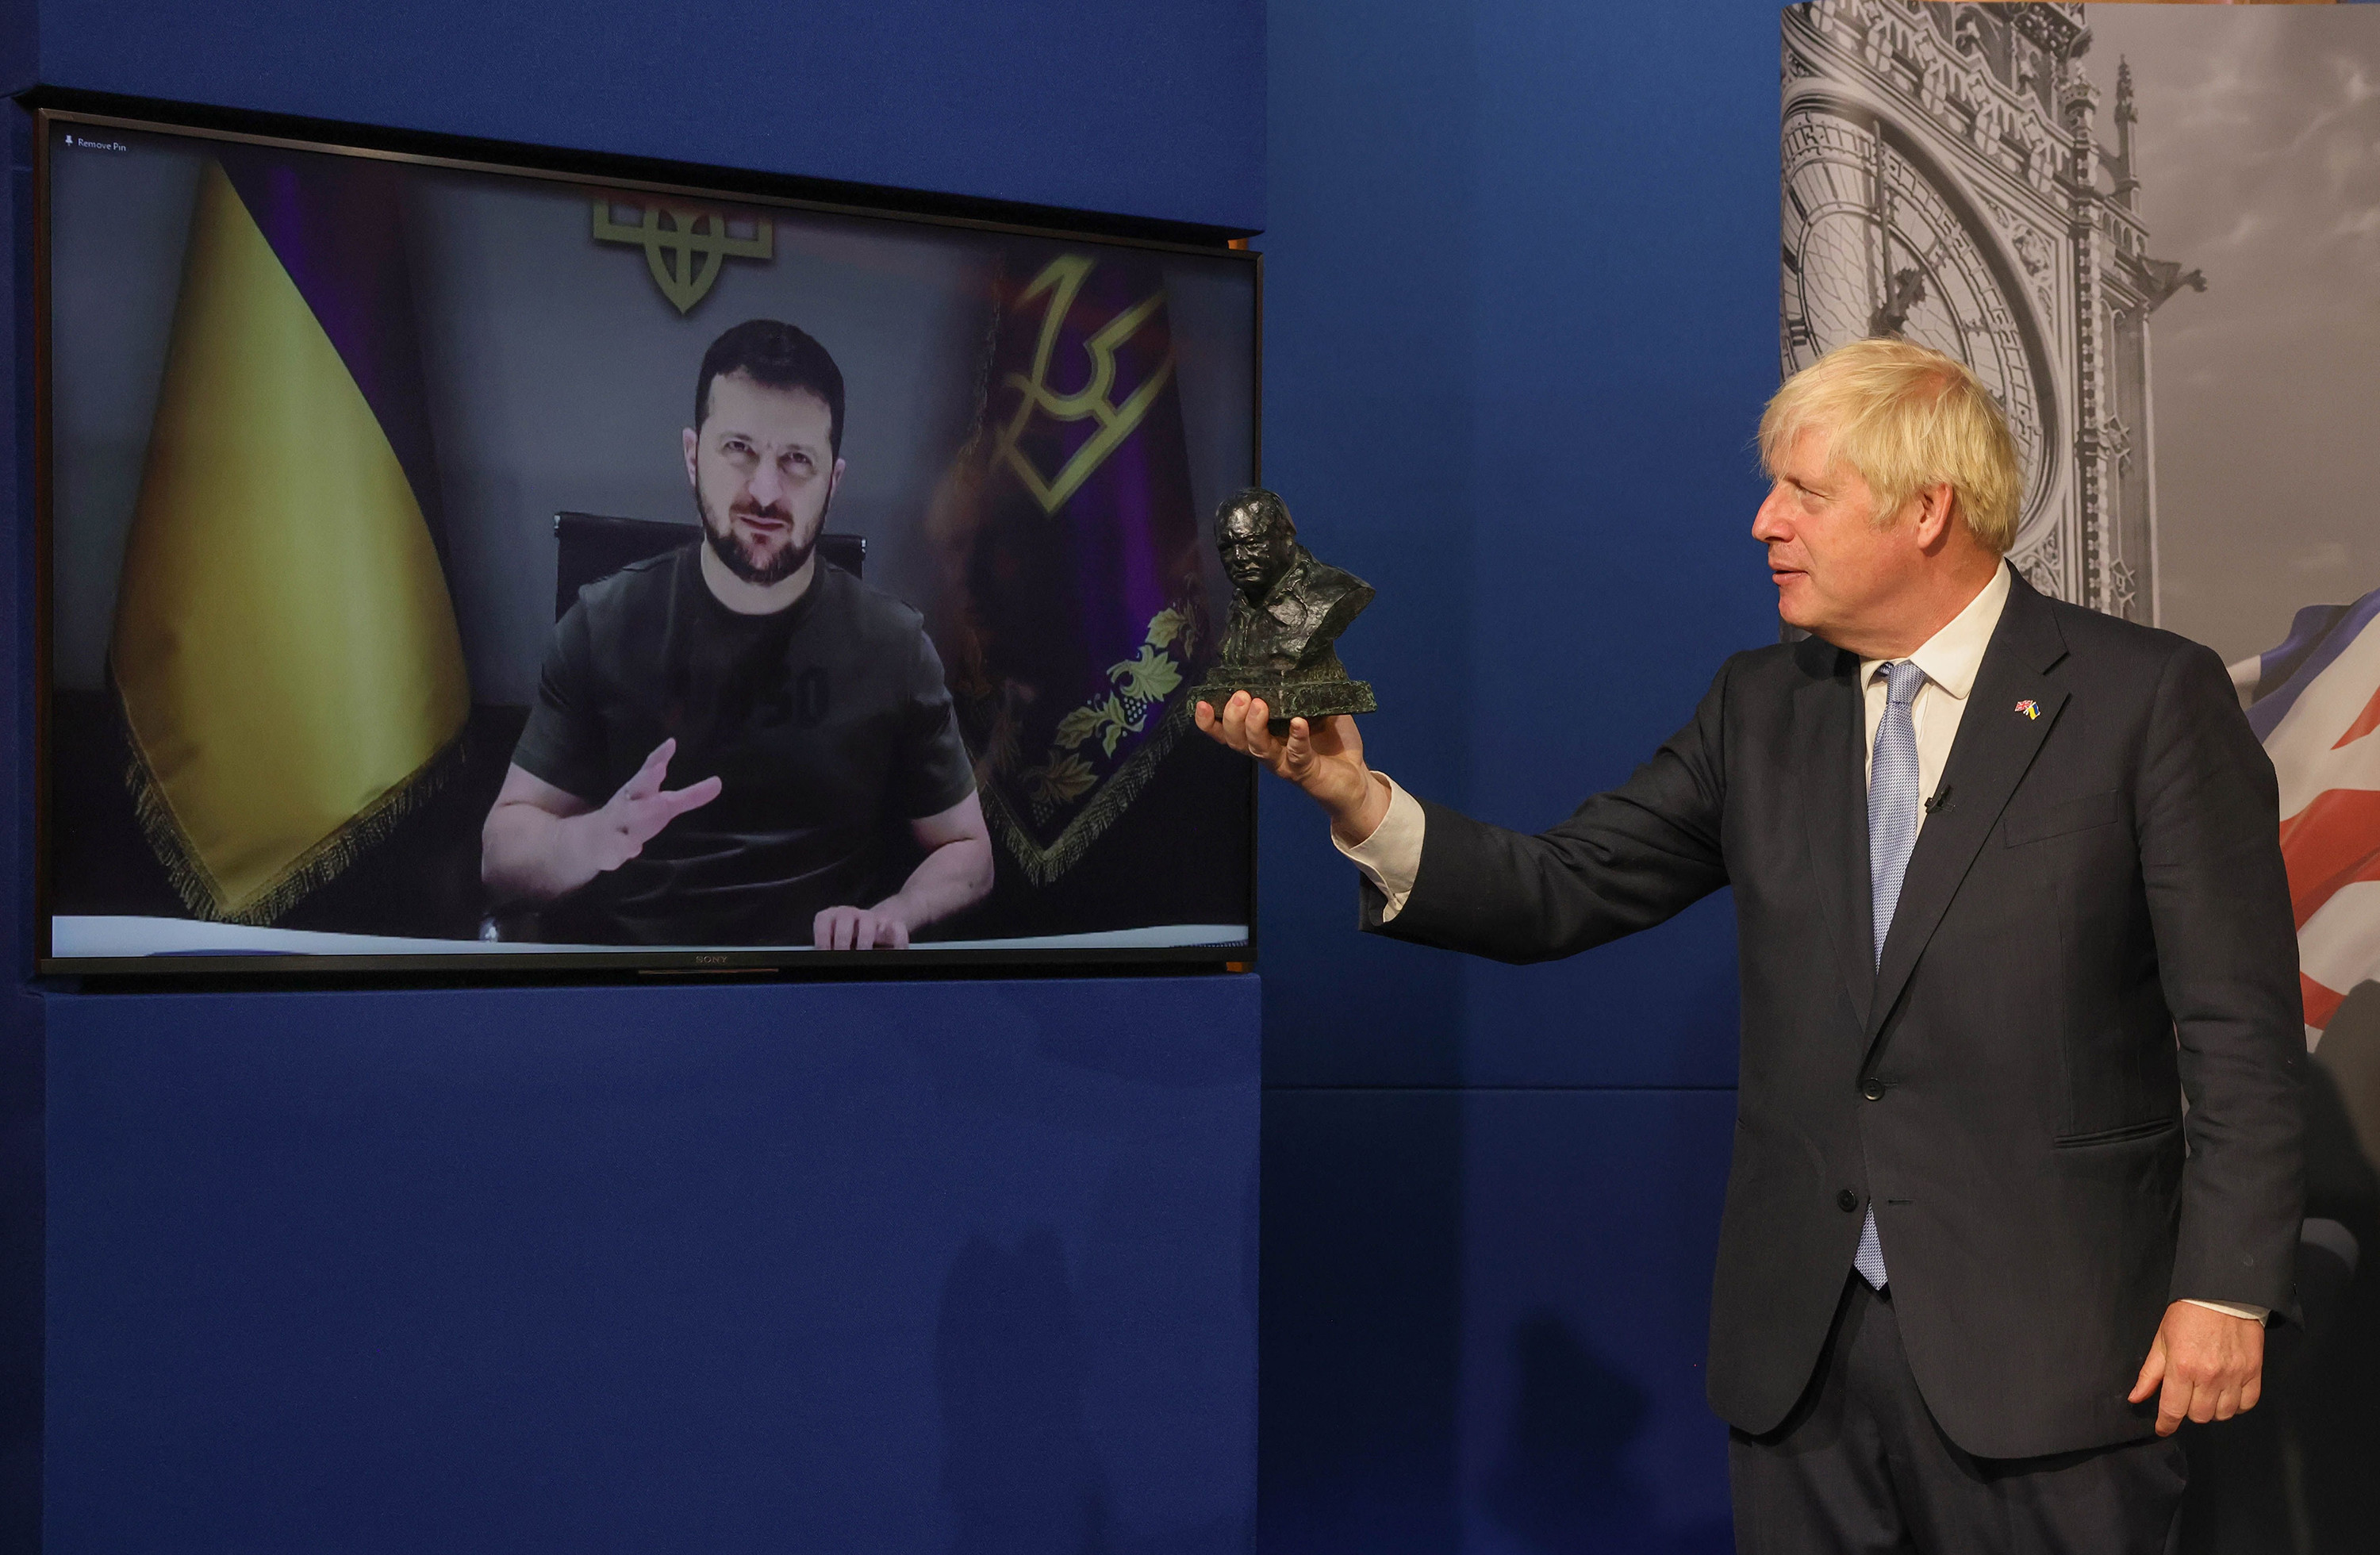 â€œThe Sir Winston Churchill Awardâ€ - Outgoing UK prime minister Boris Johnson honors Zelensky with award for leadership